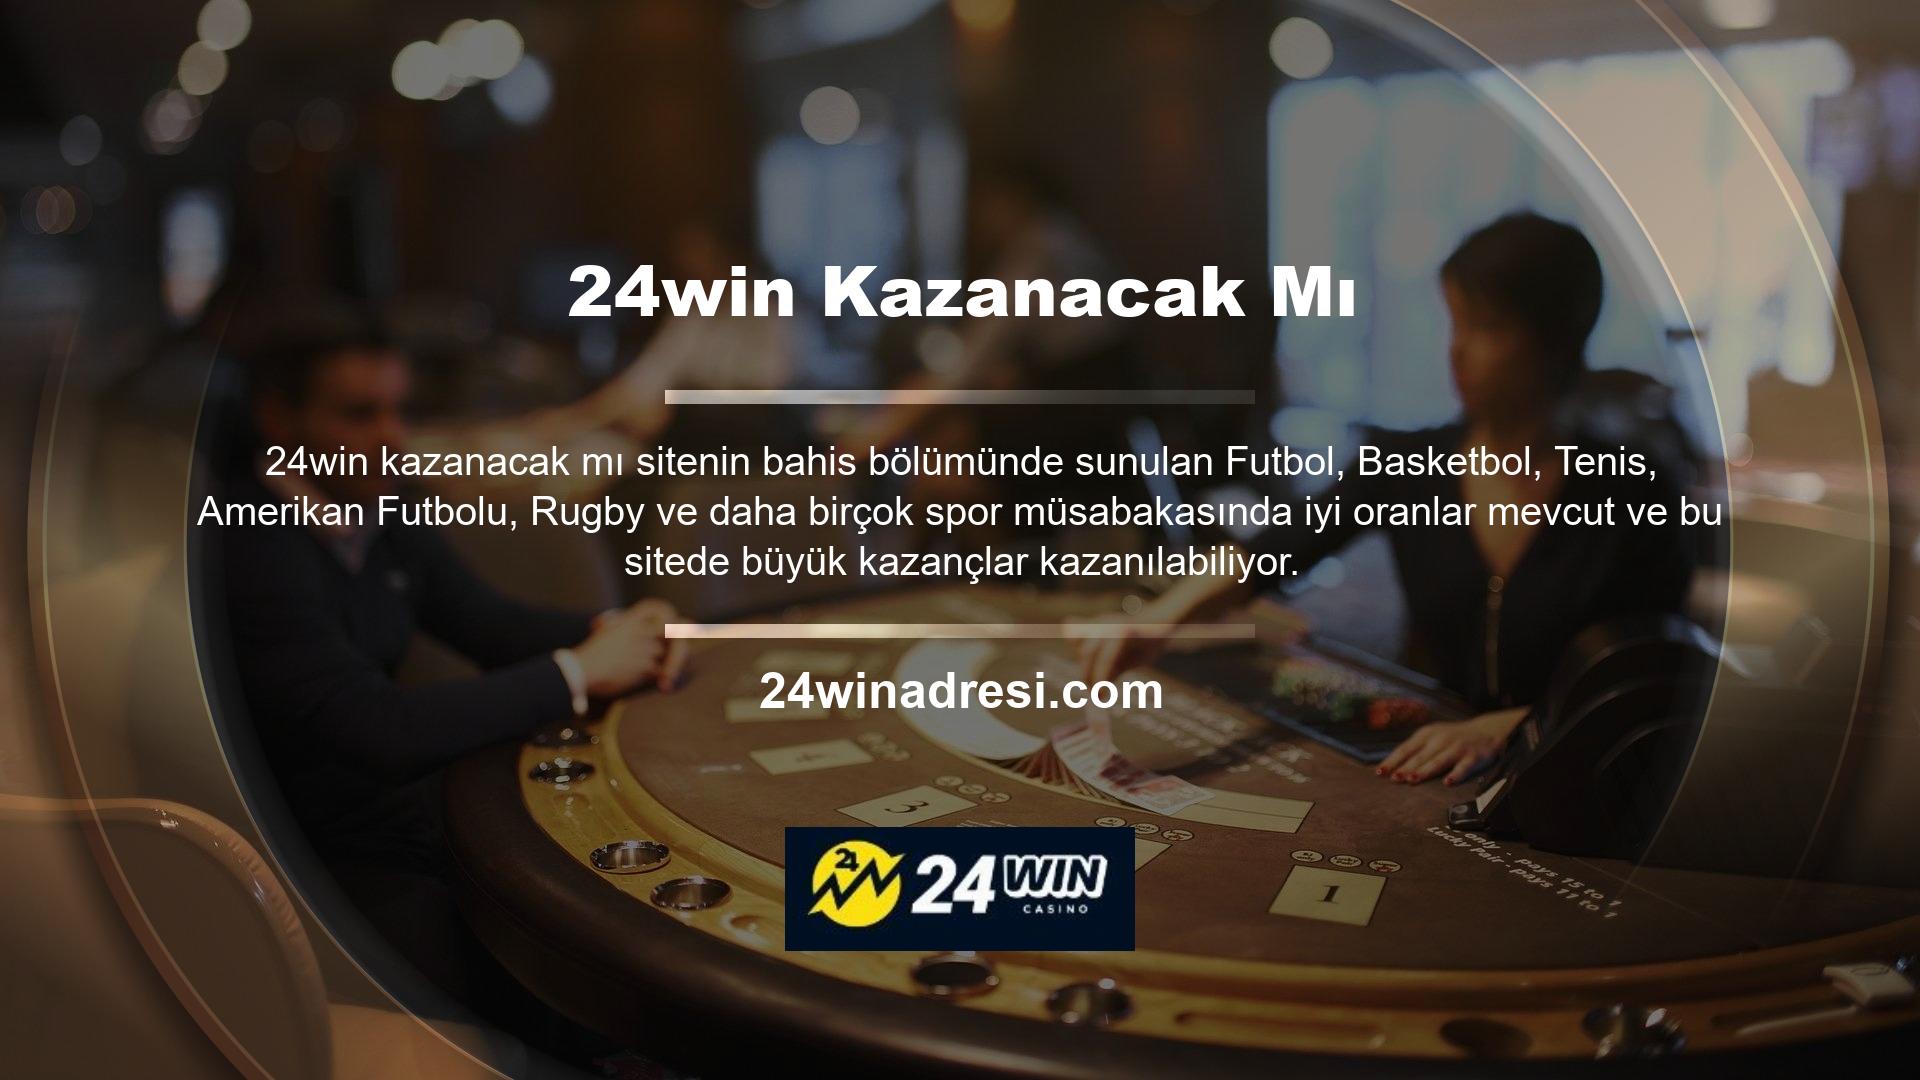 24win, sitenin spor bahisleri ve canlı bahis bölümleri kadar para kazanması durumunda oyunlarda kaliteli ve eğlenceli kazançlar sunmasını sağlayan bir özelliktir